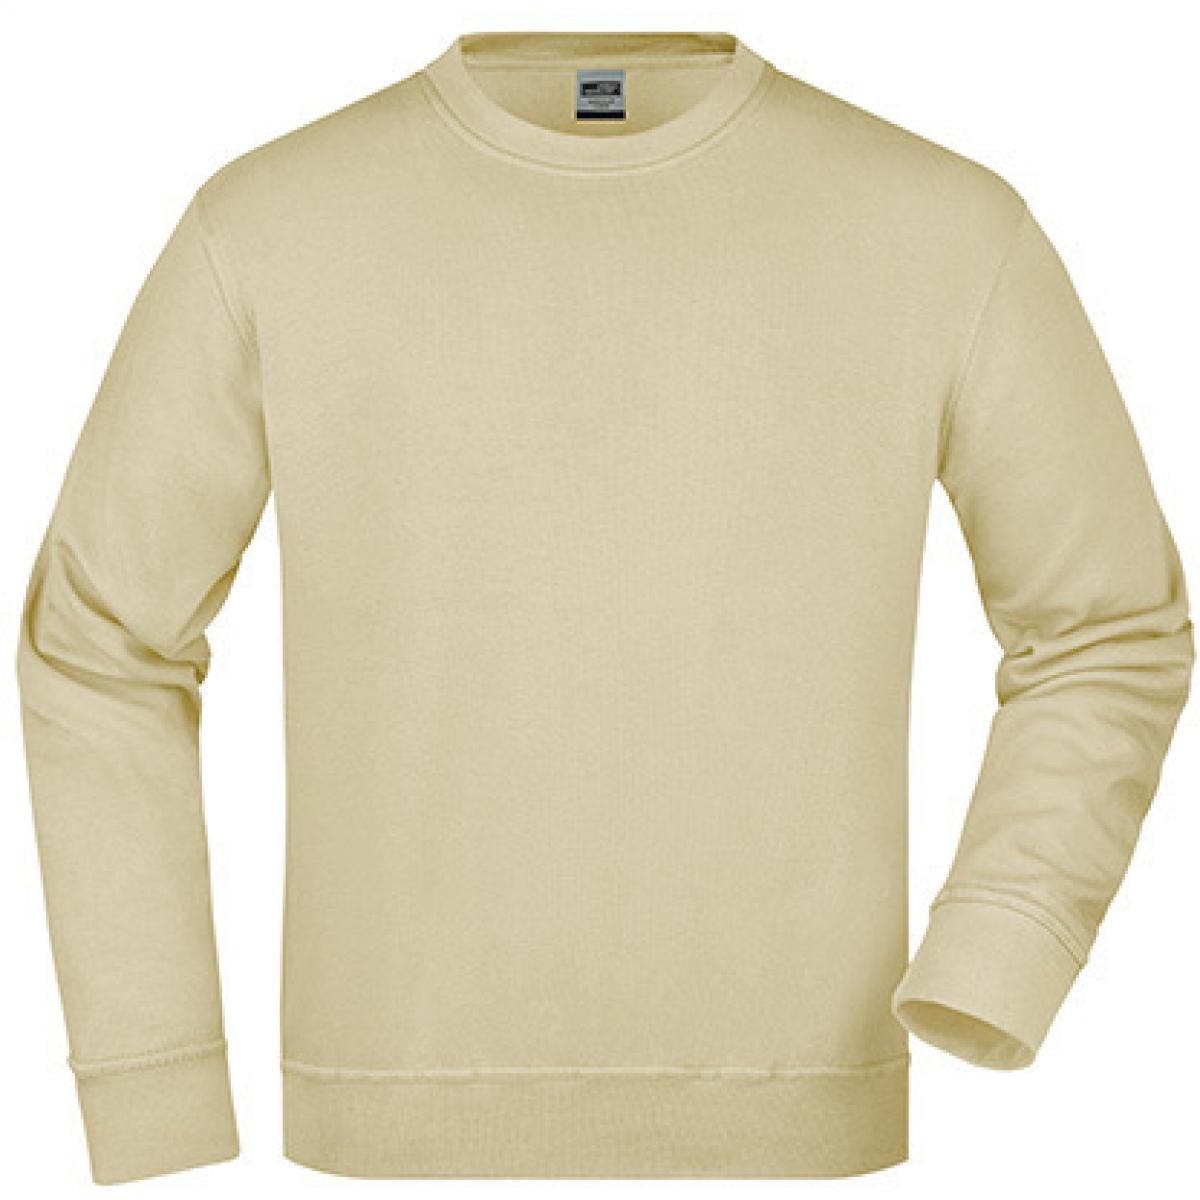 Hersteller: James+Nicholson Herstellernummer: JN840 Artikelbezeichnung: Workwear Sweatshirt / Waschbar bis 60C Farbe: Stone